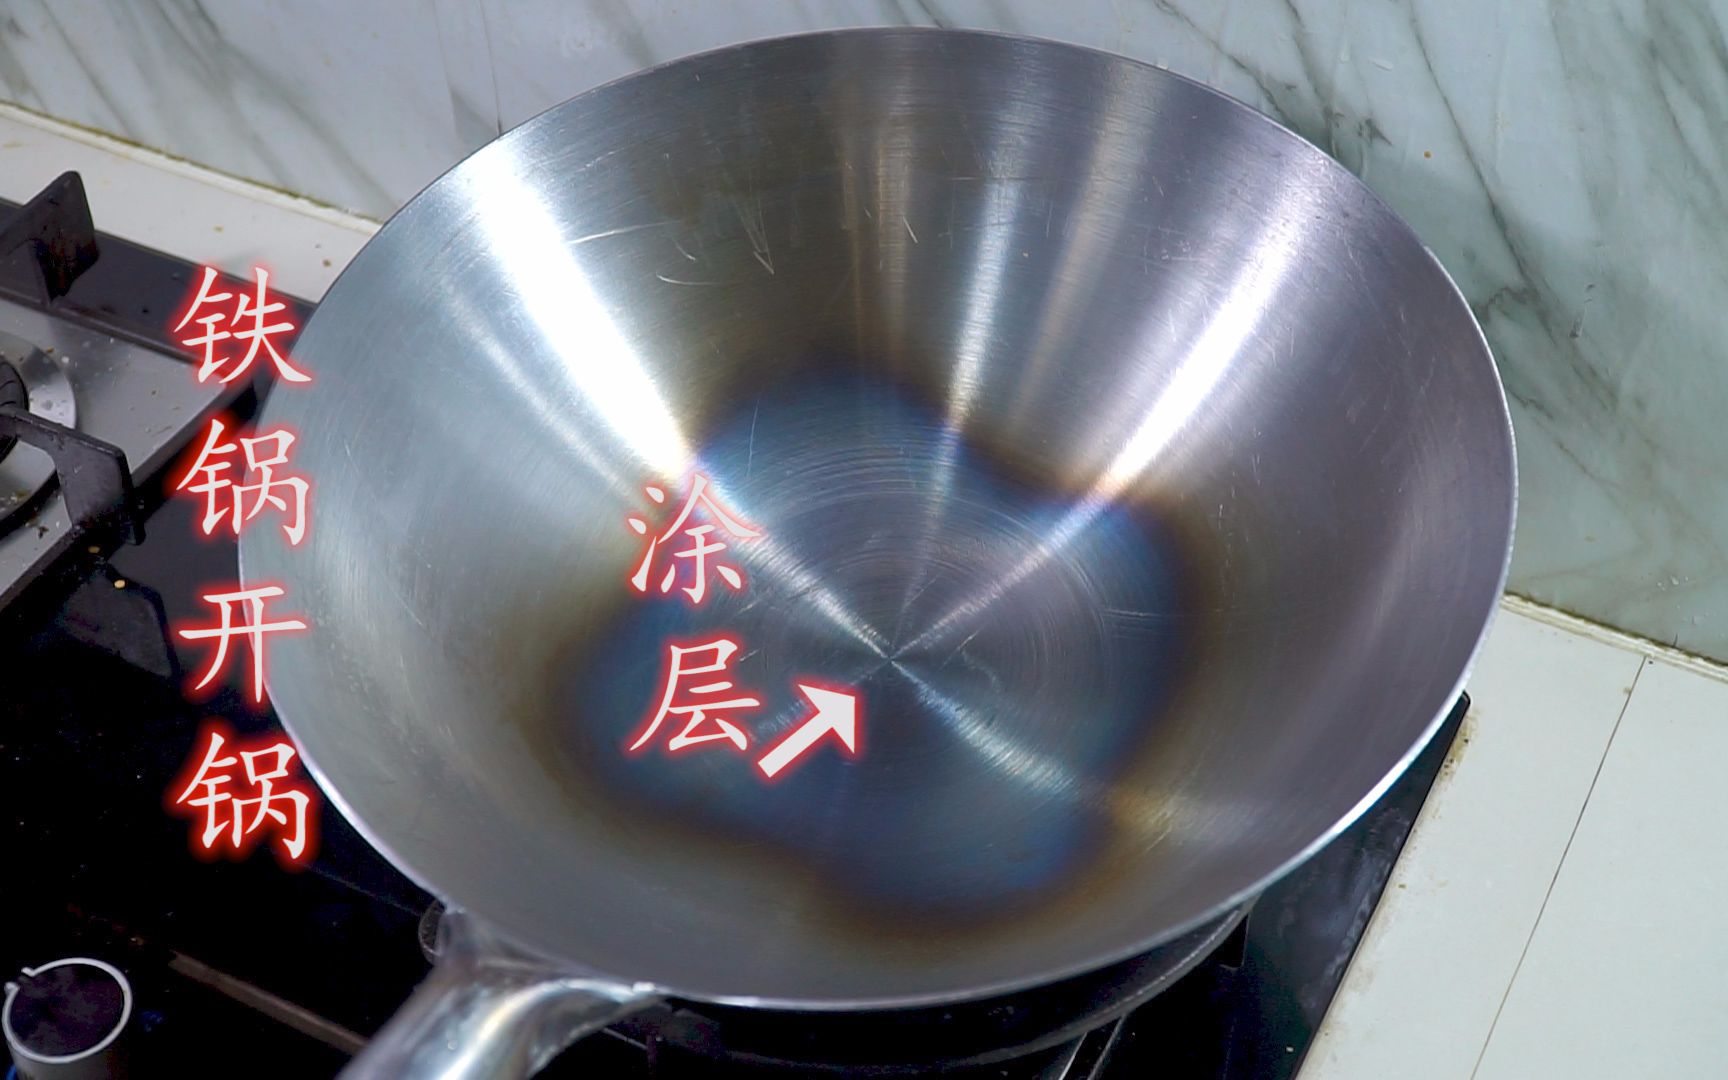 又买了一个铁锅，今天分享铁锅开锅视频，如何做到不粘锅 - 哔哩哔哩